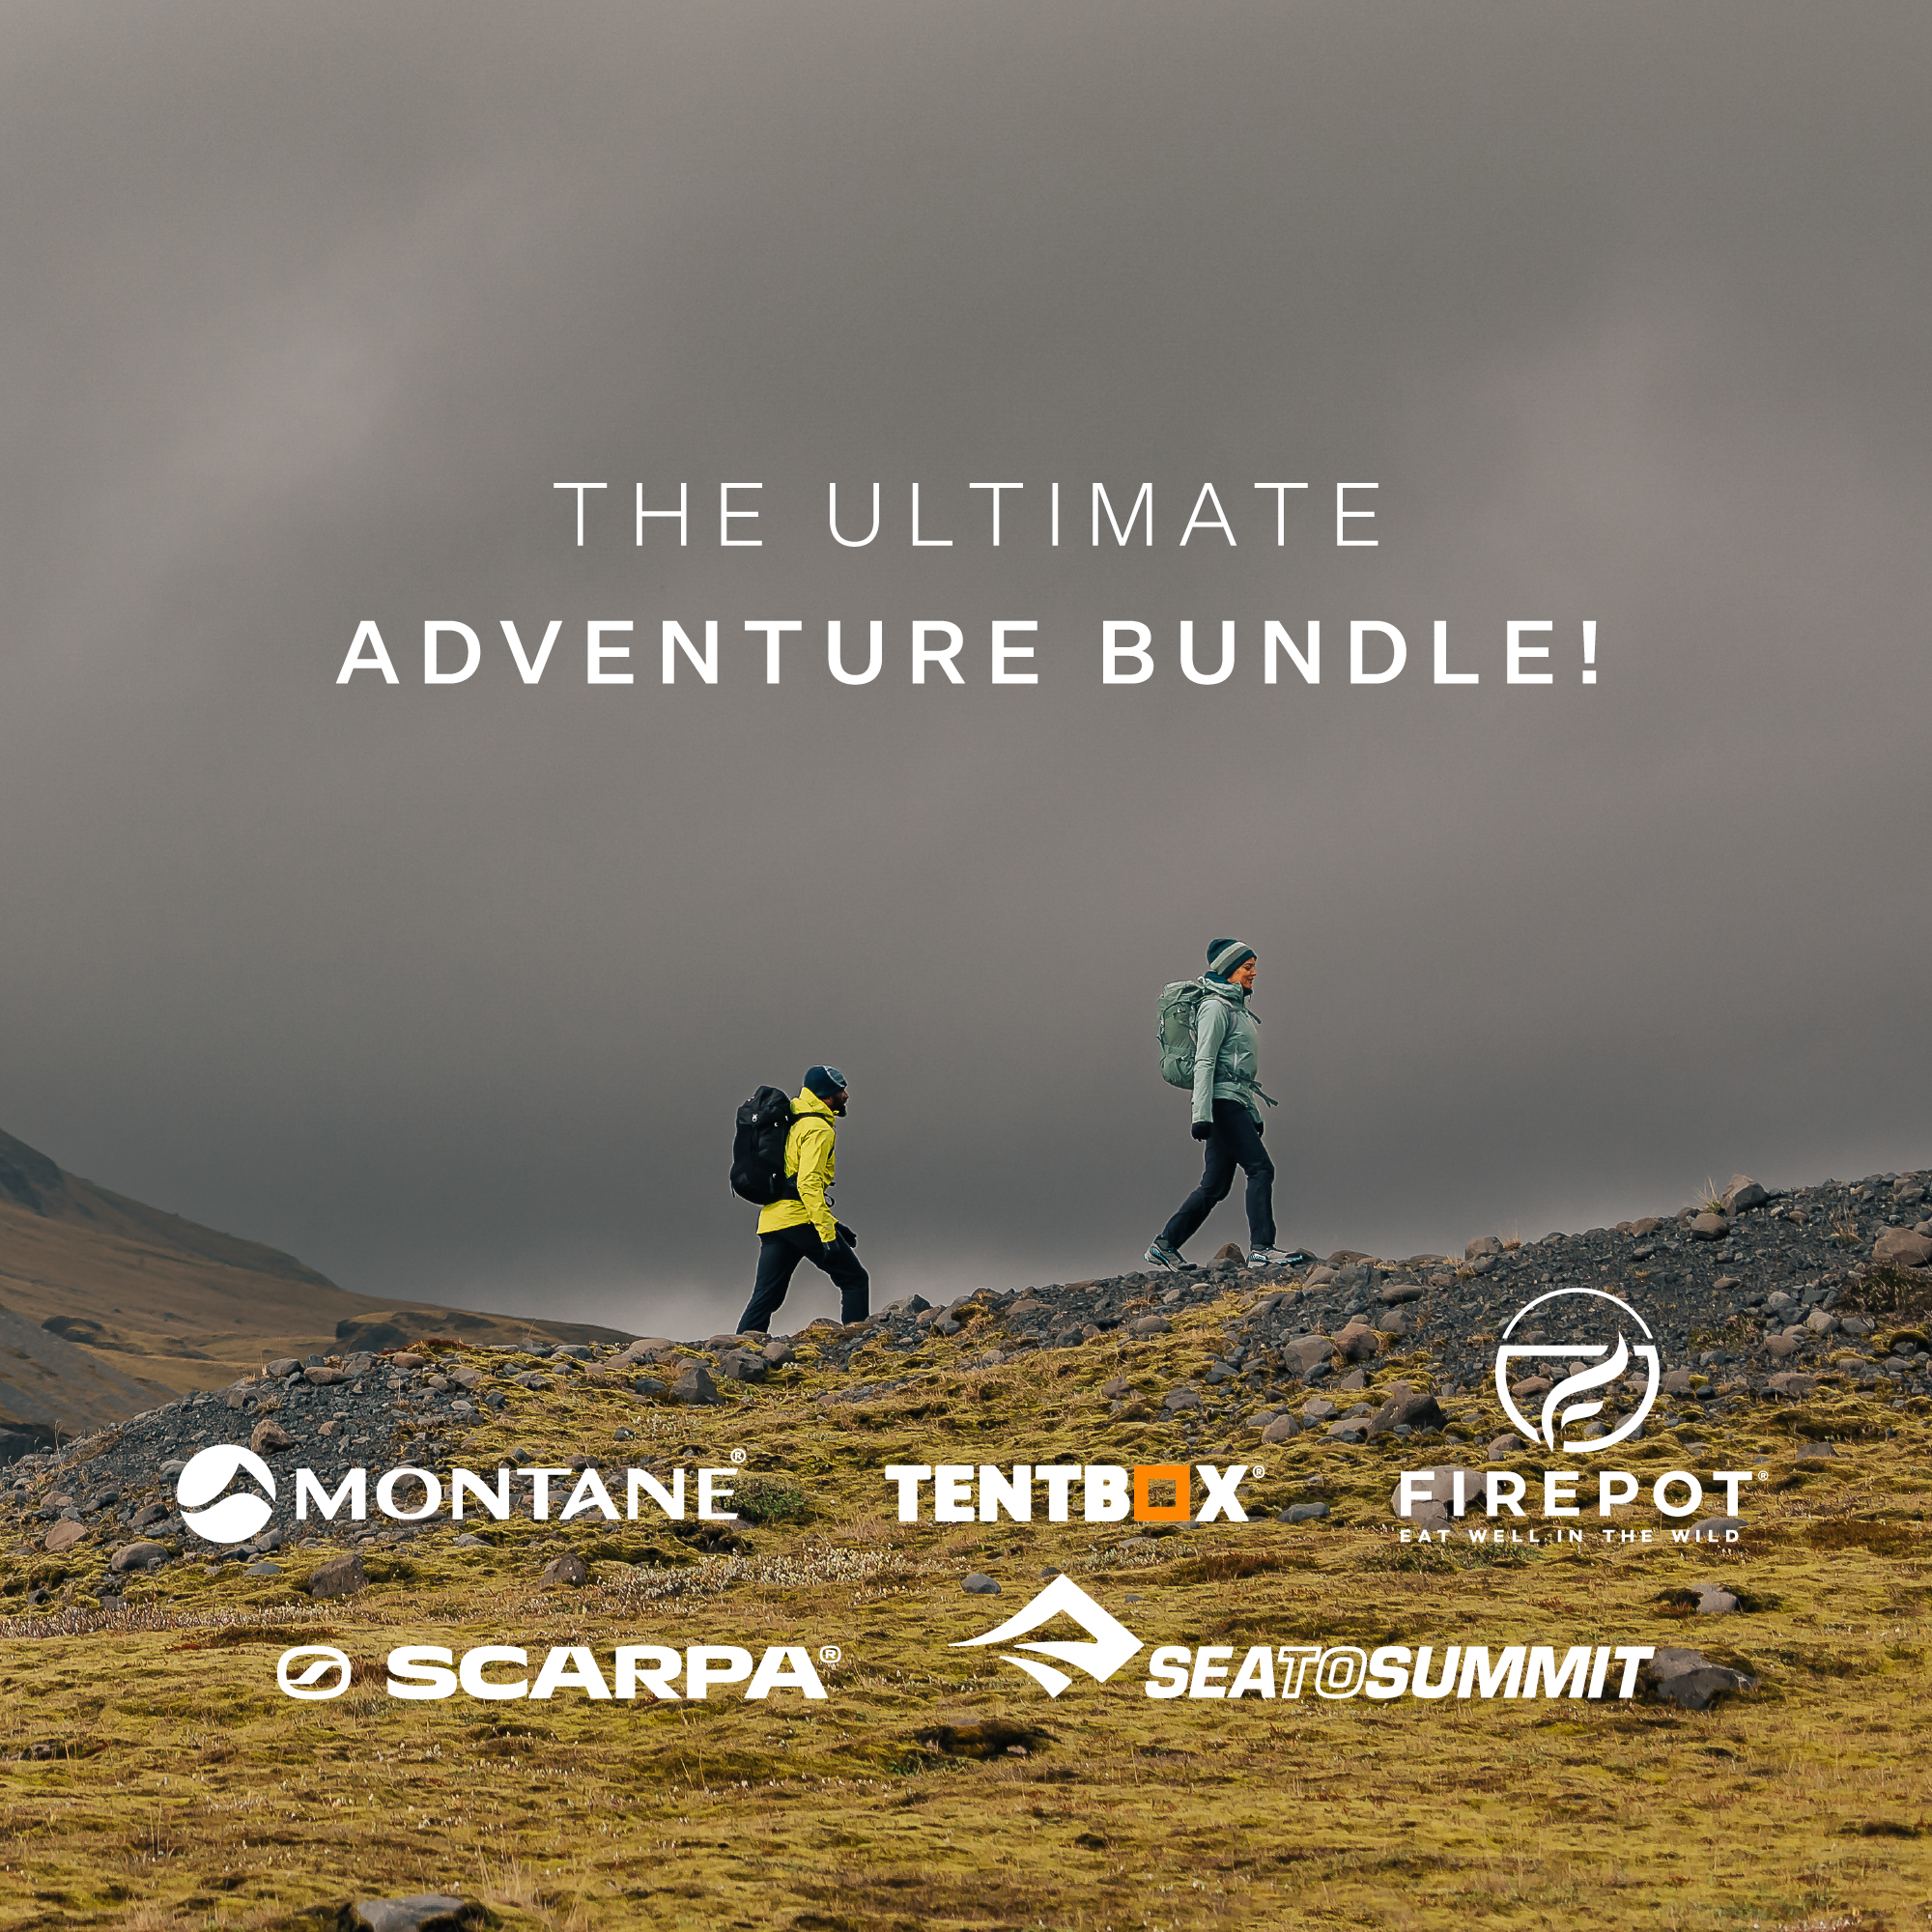 Win the ultimate adventure bundle